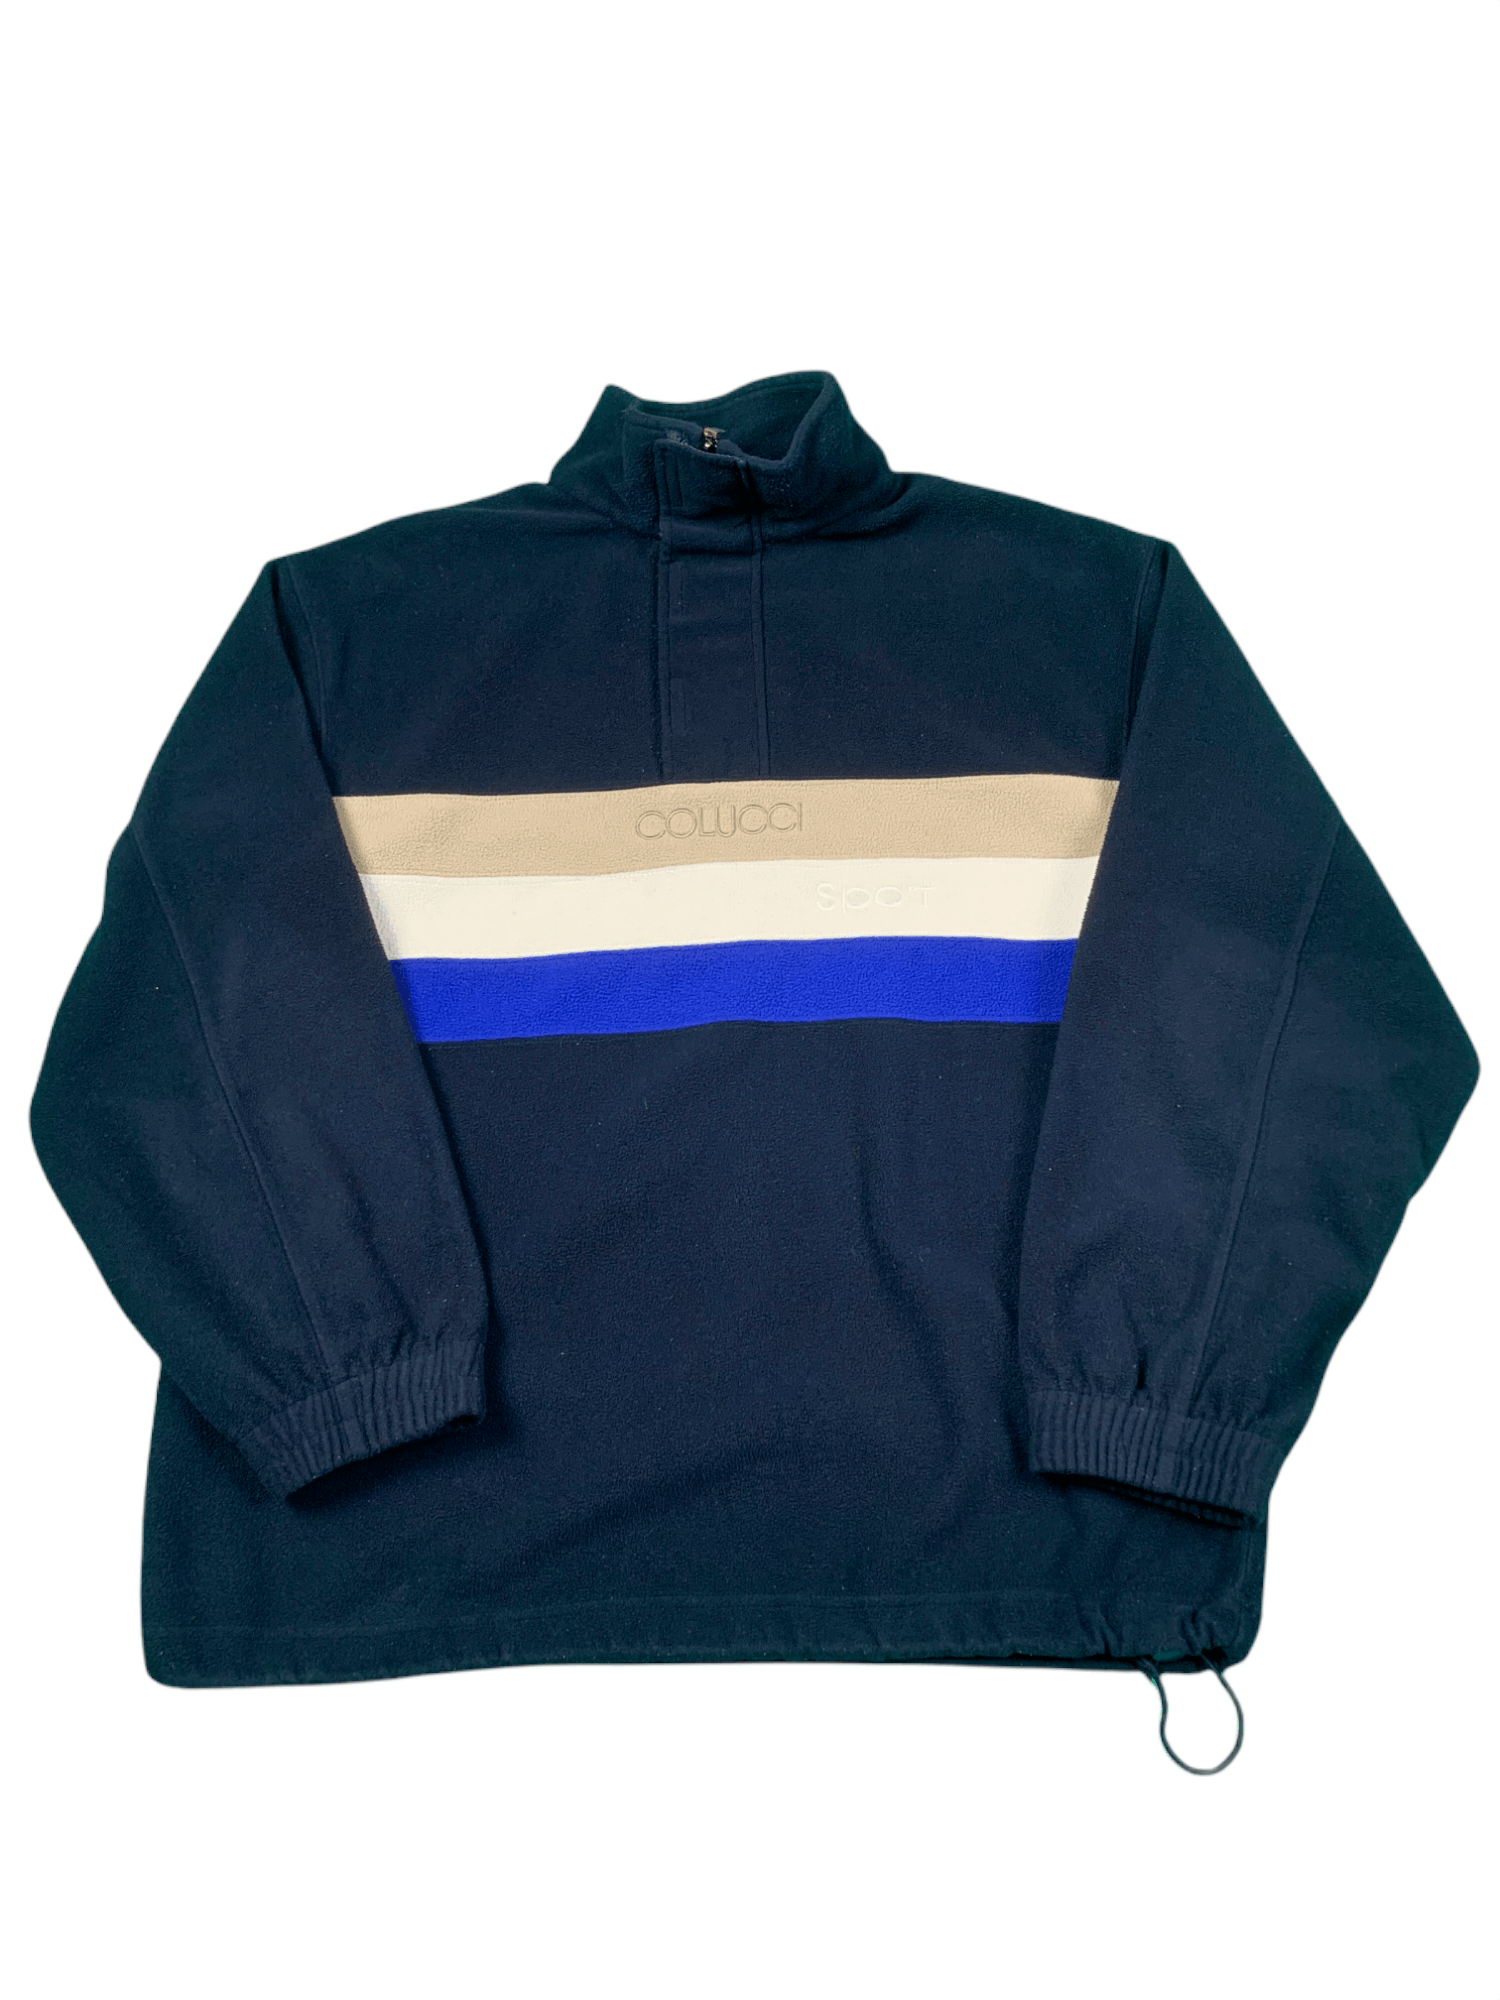 Vintage Carlo Colucci Sport Vintage Fleece | Grailed